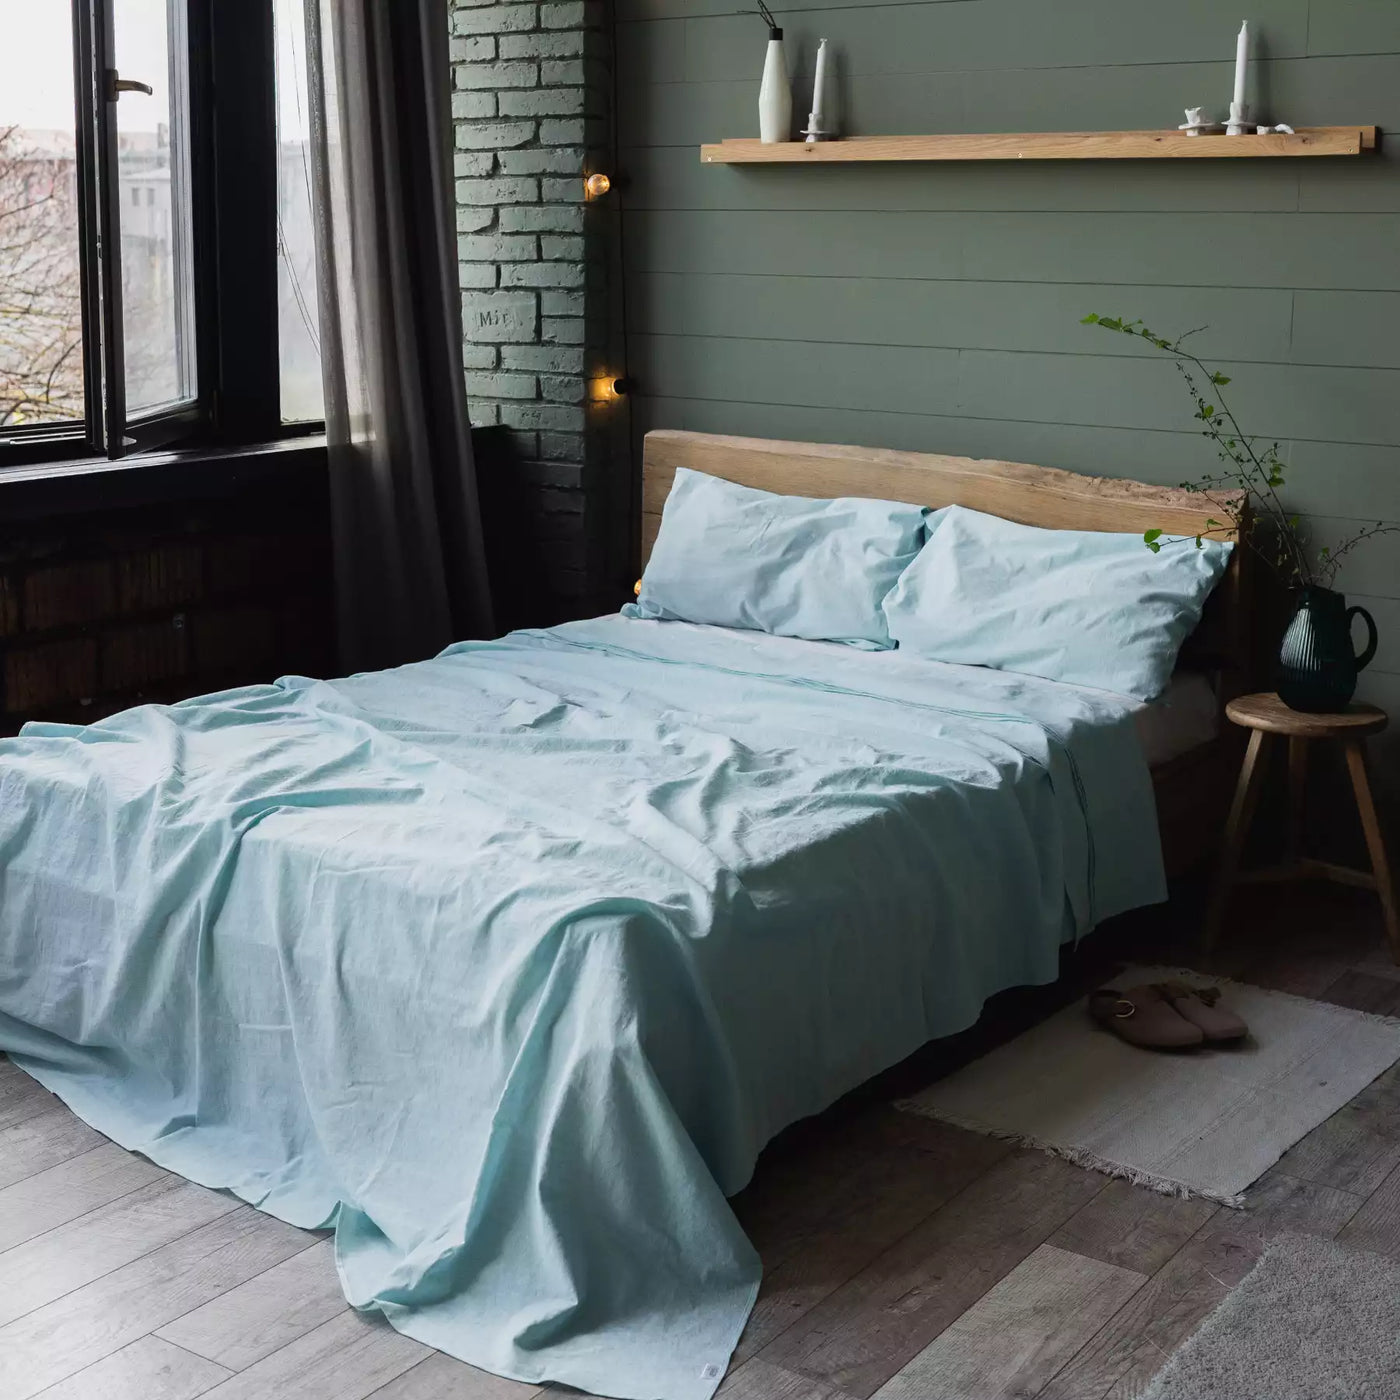 Juego de cama de lino y algodón con sábana plana 190x270 en Turquesa Melange